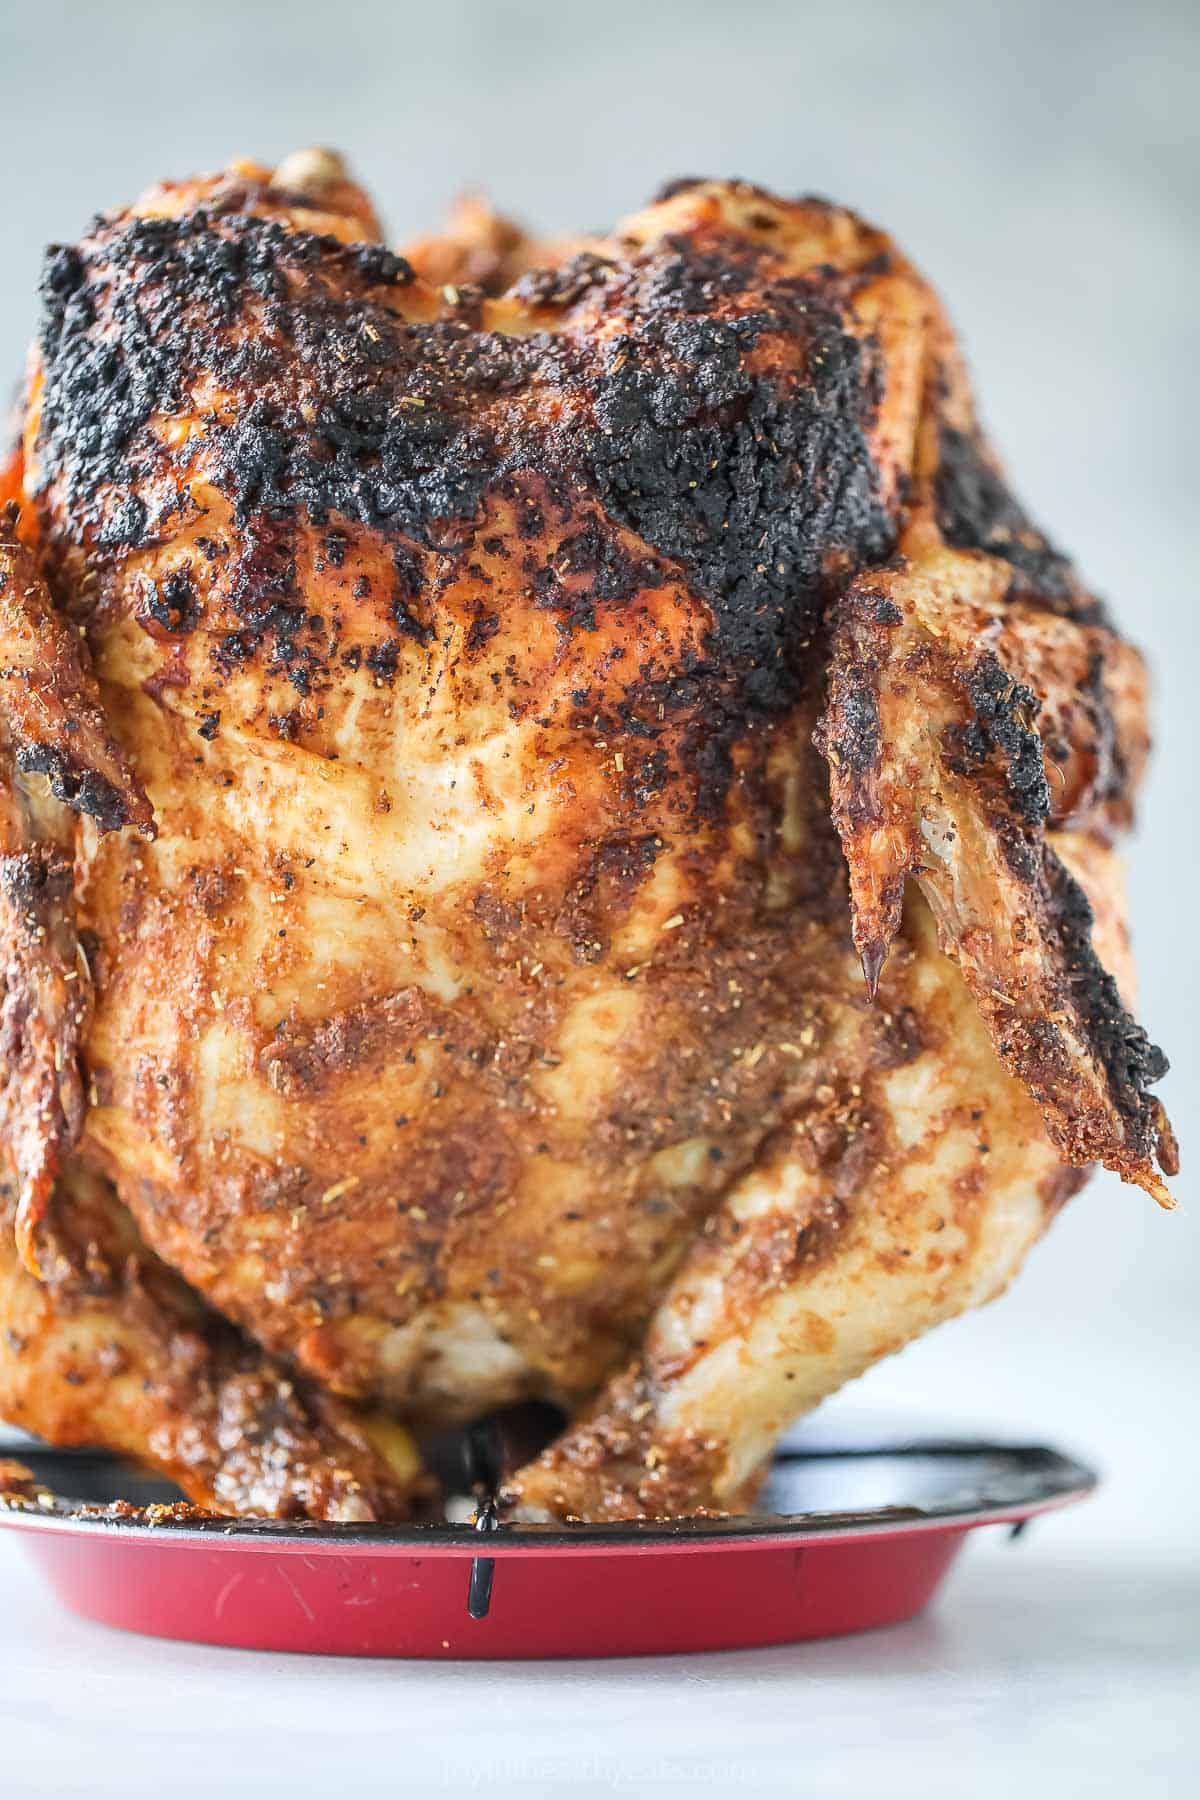 Vertically-standing grilled chicken. 